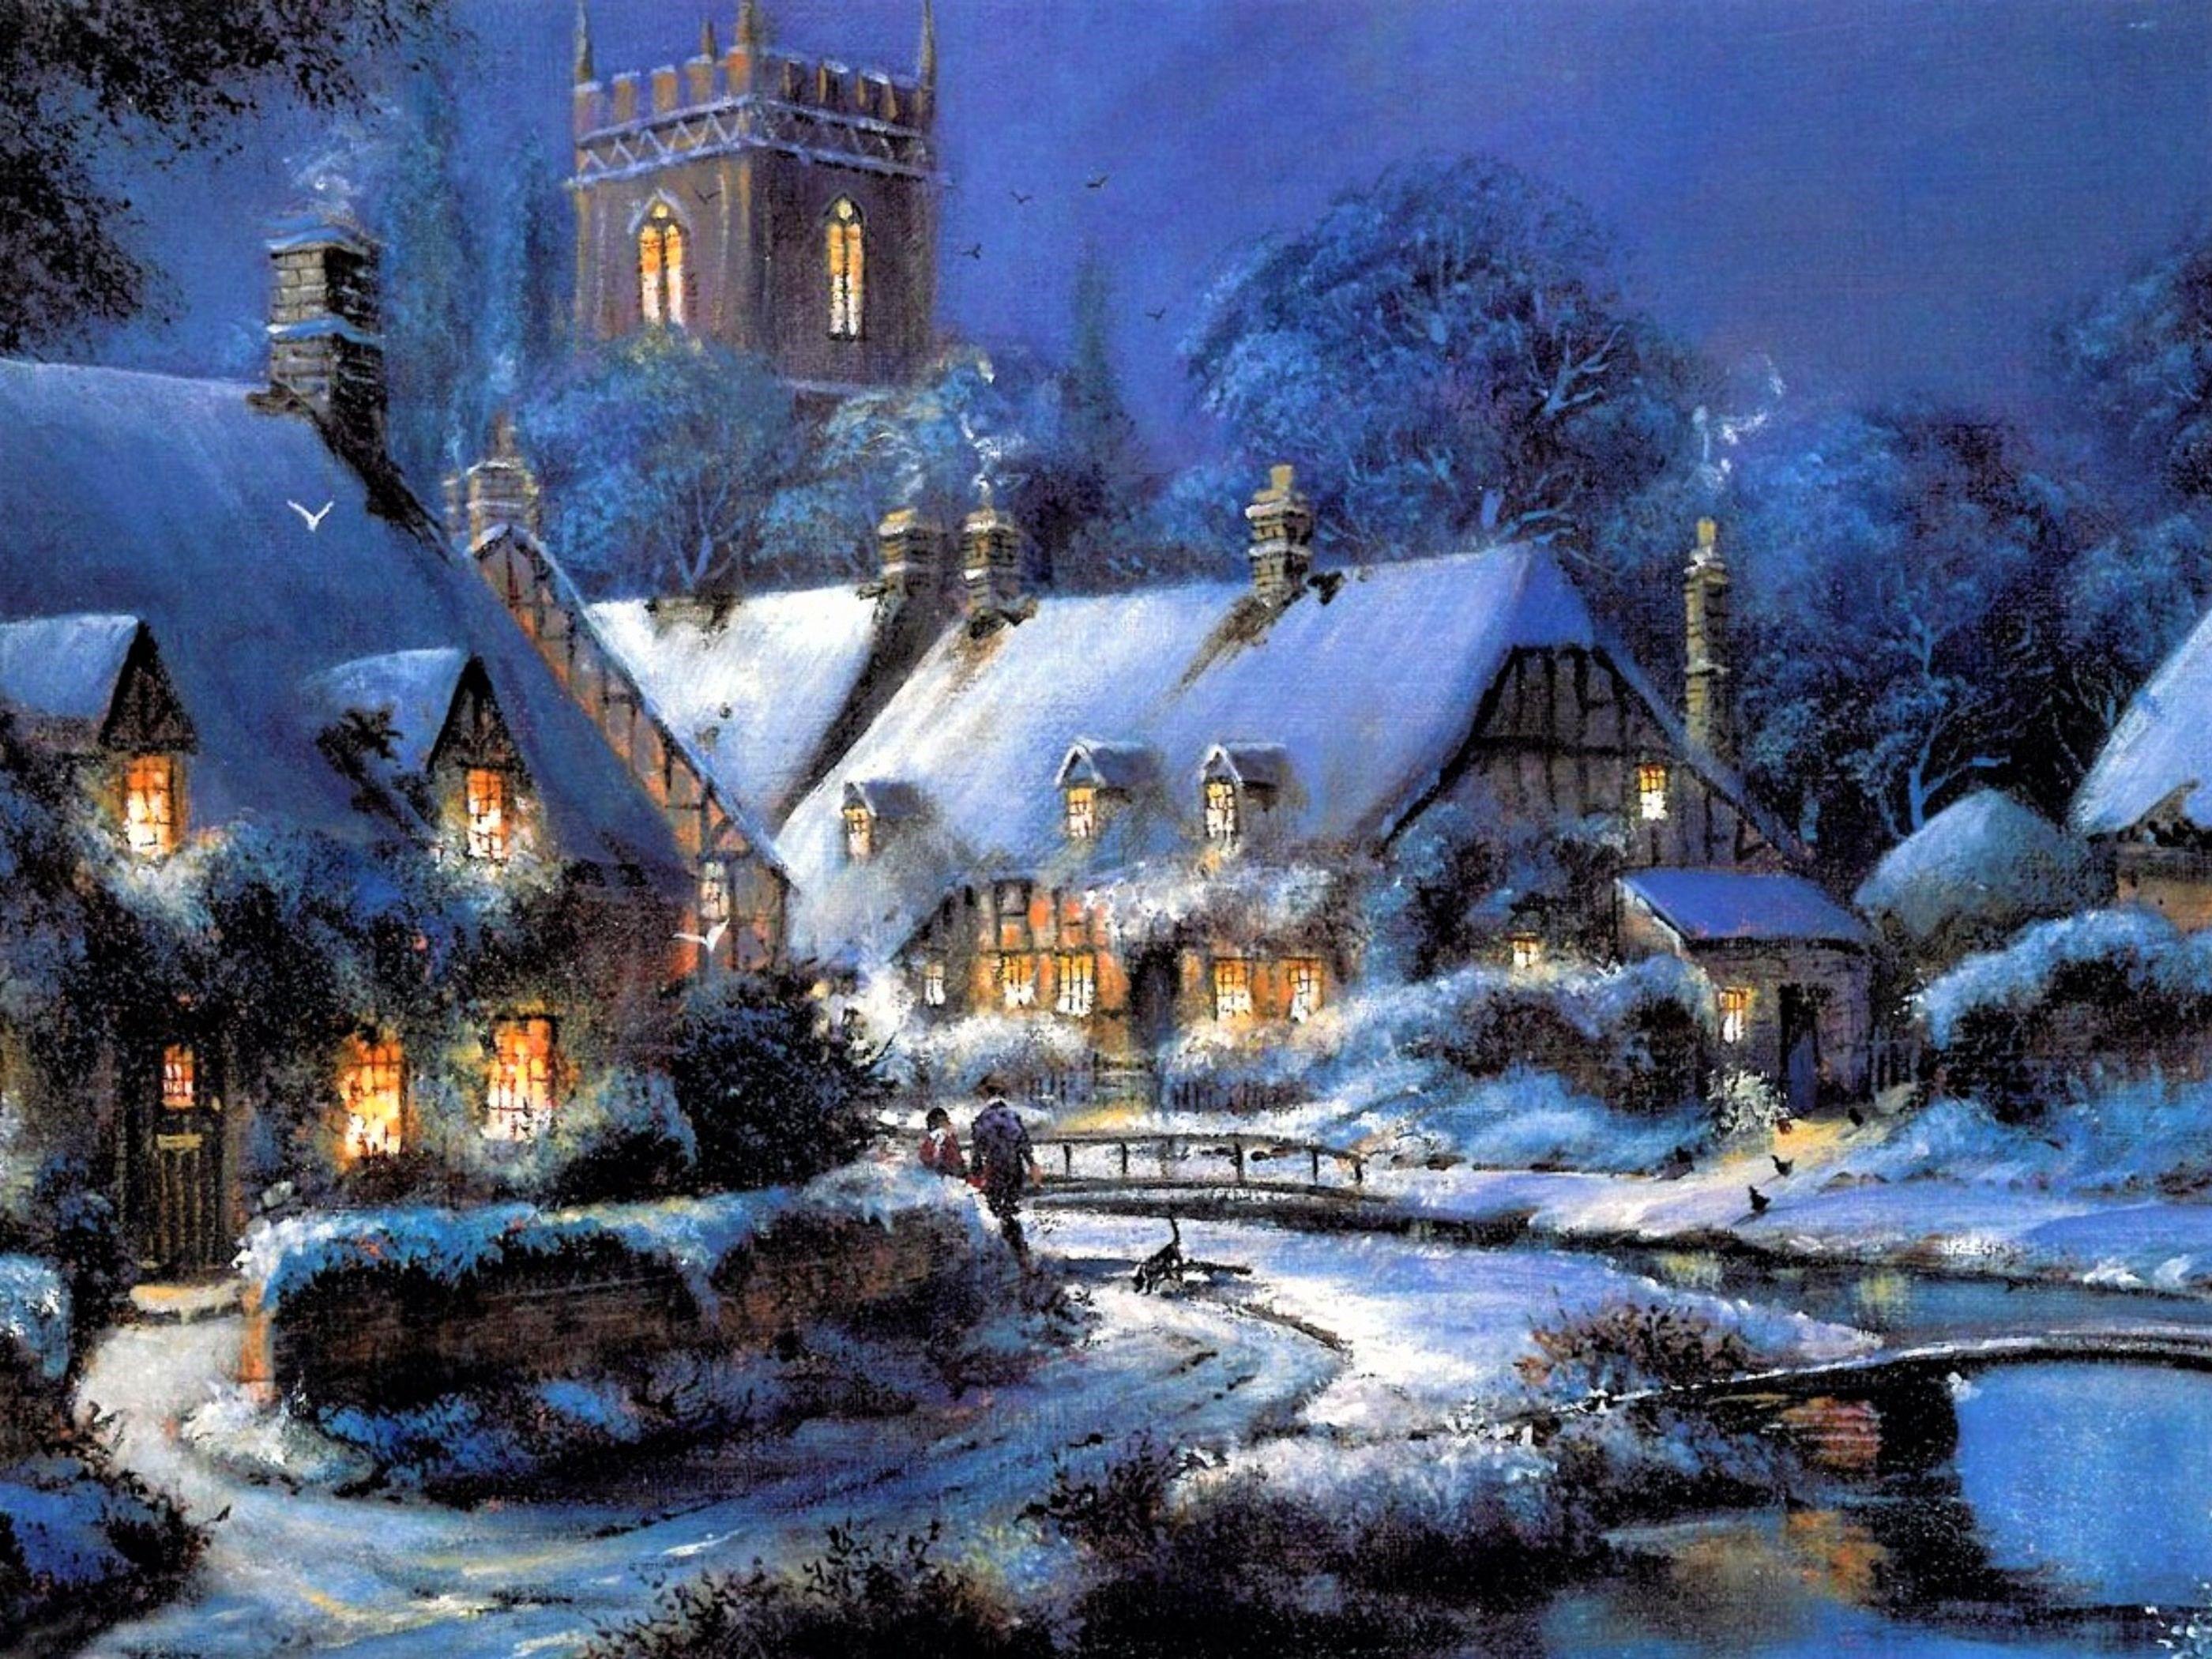 Fantasy Winter Village Wallpaper